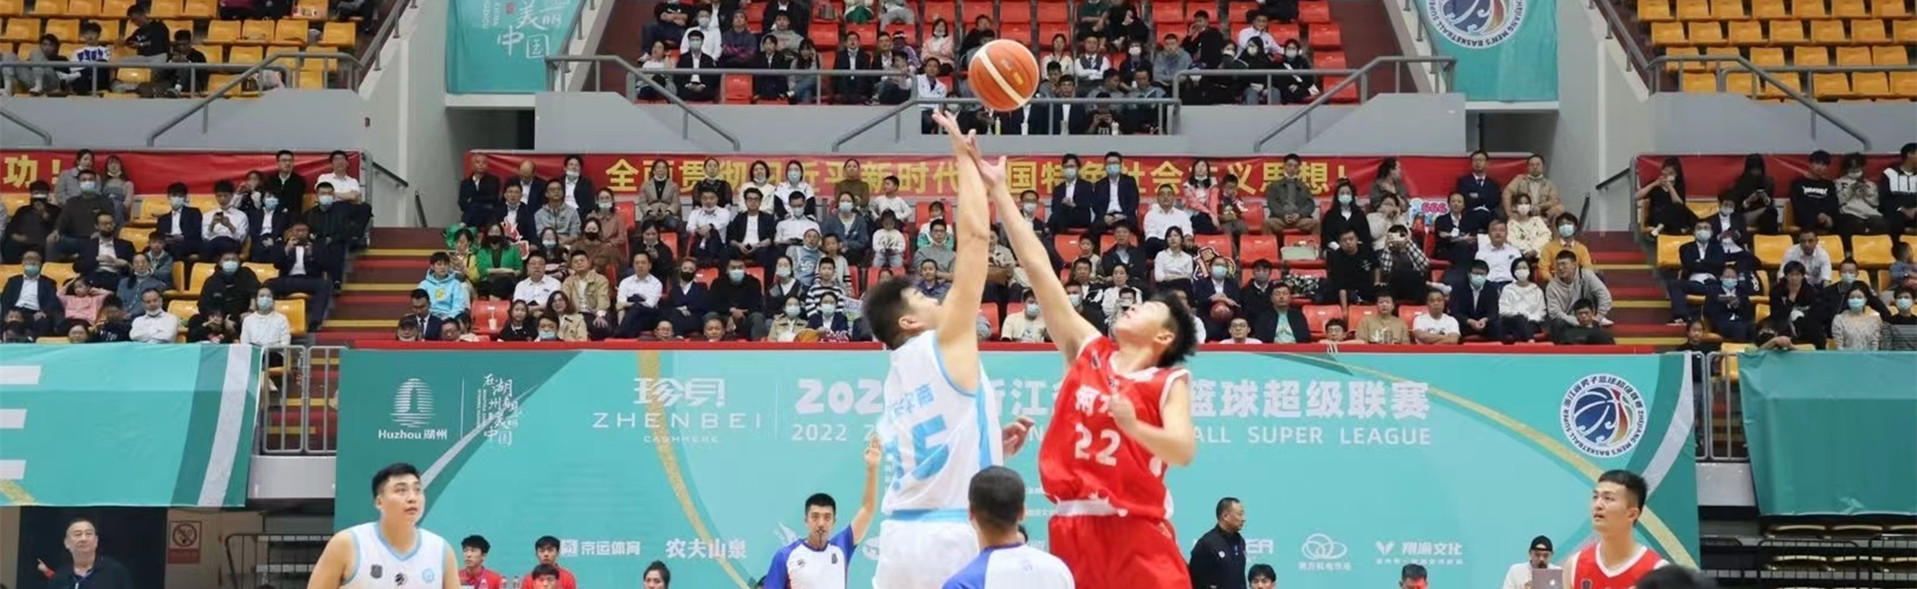 珍贝・2022年浙江省男子篮球超级联赛在湖州隆重开幕